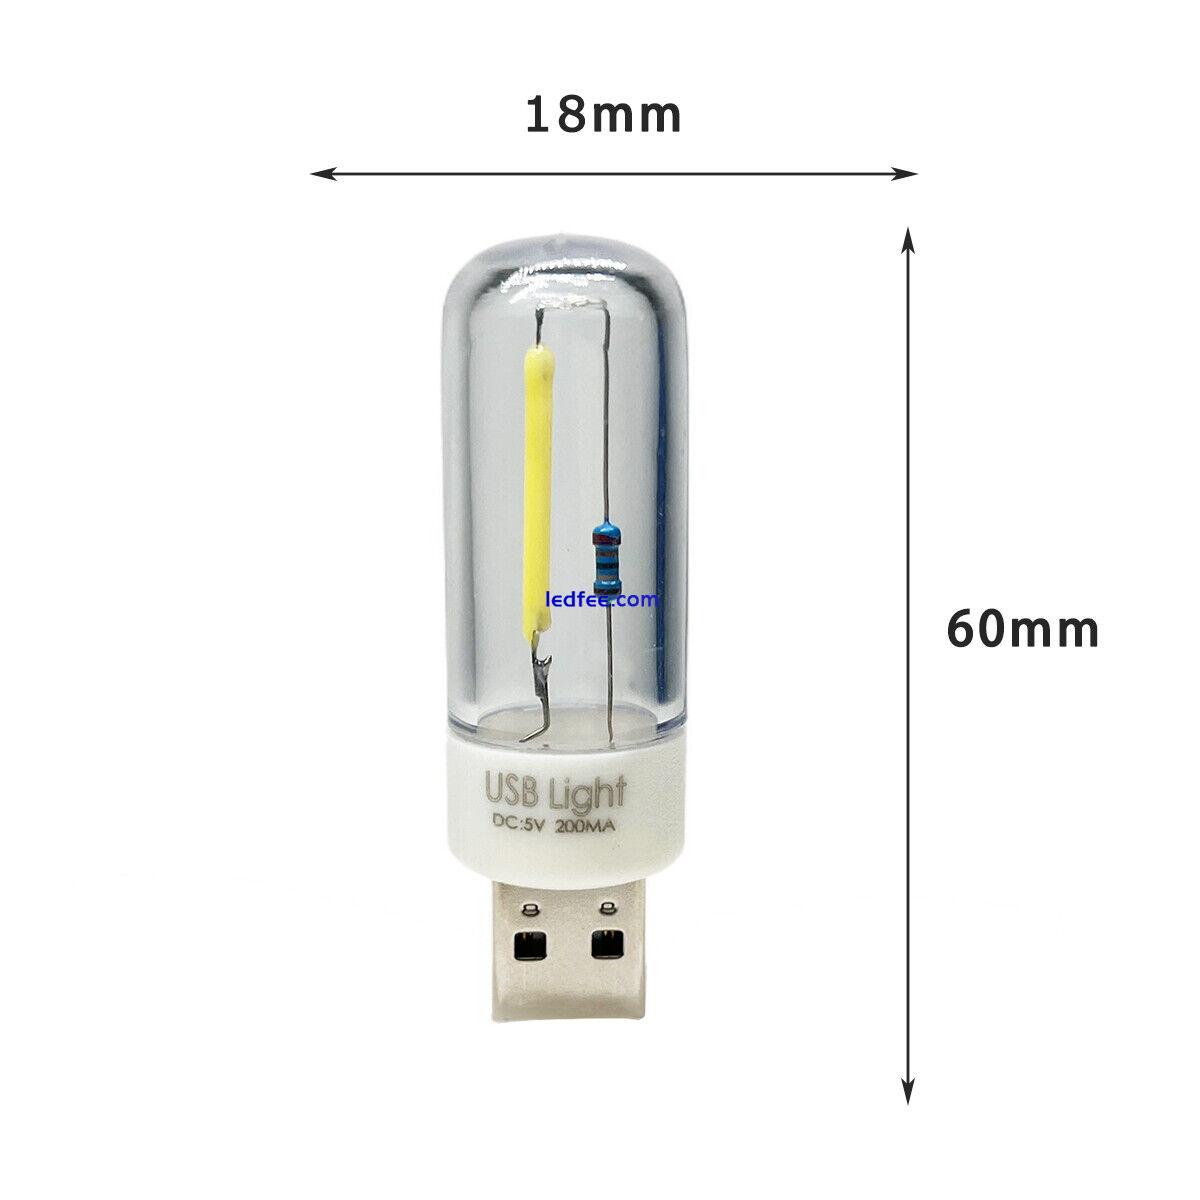 5V USB Mini LED COB Light Bulb Filament Portable Night Reading Lighting Lamp BC 0 